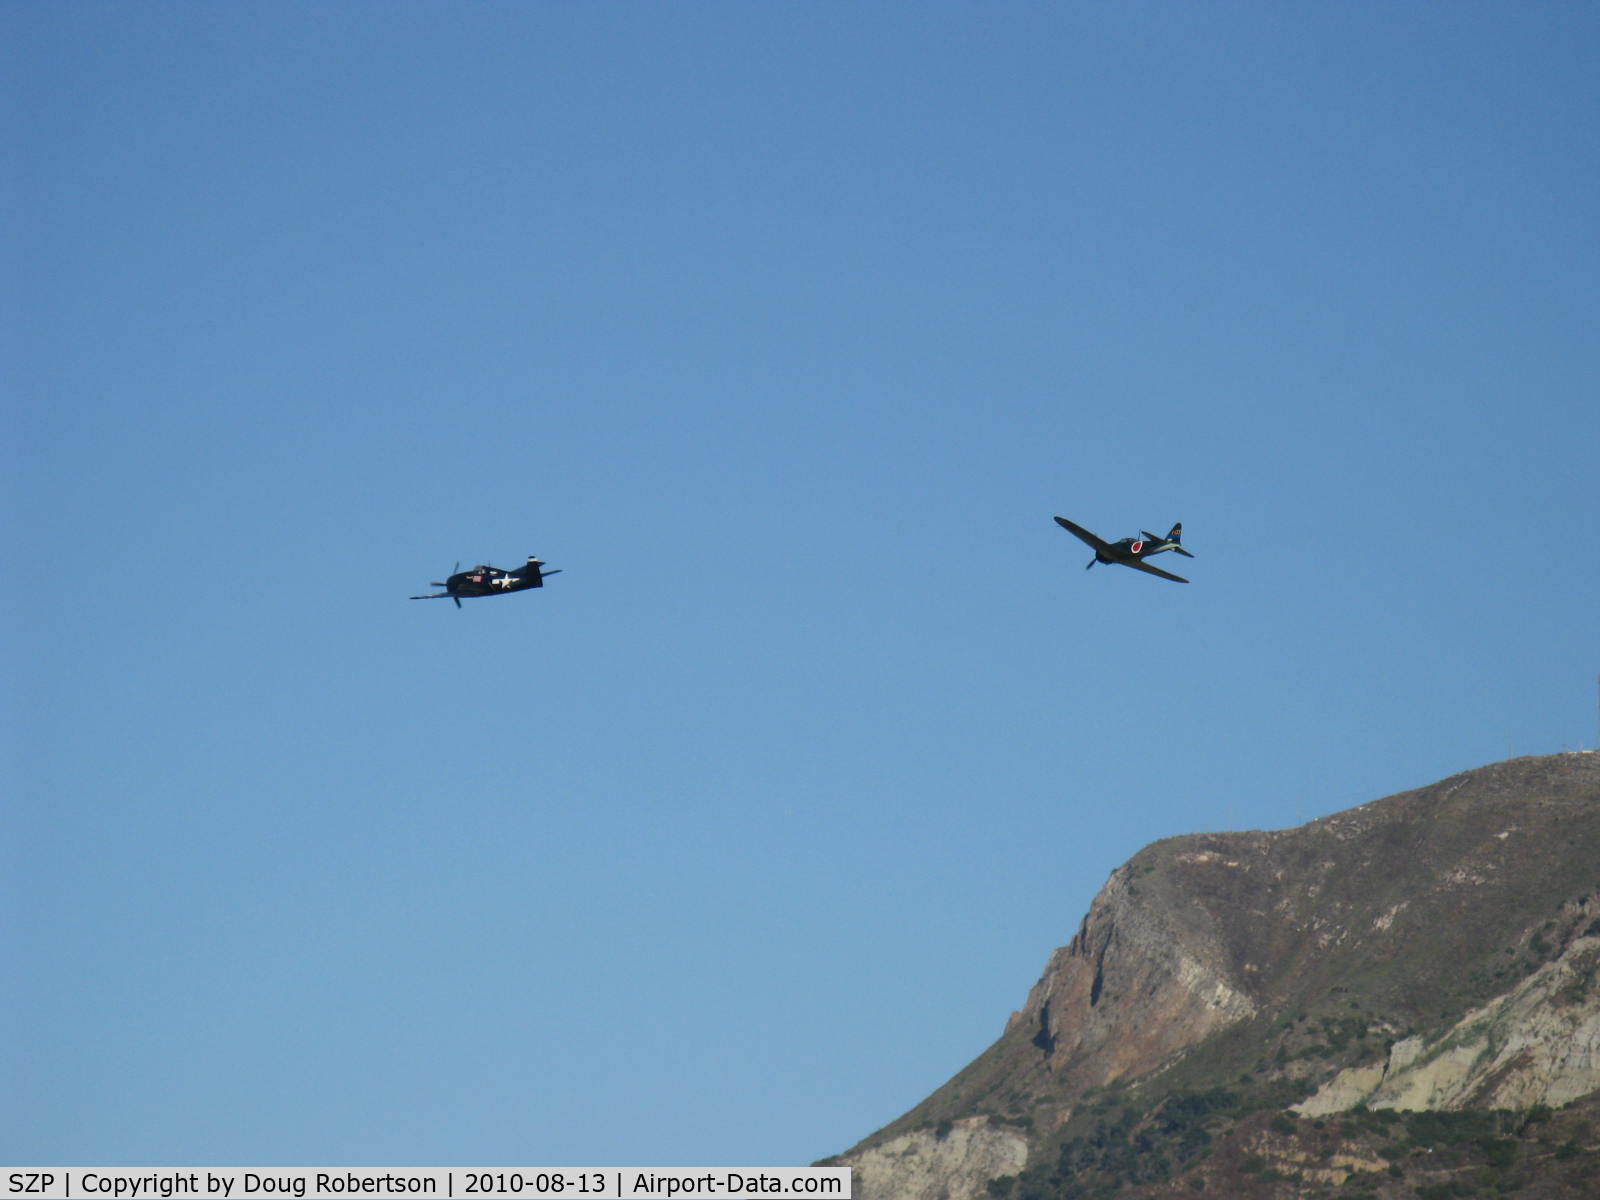 Santa Paula Airport (SZP) - Dogfight airshow practice-N712Z Mitsubishi A6M3 ZERO-SEN (ZEKE) vs. N1078Z S&S Special GRUMMAN F6F-6 HELLCAT 'Minsi III' 